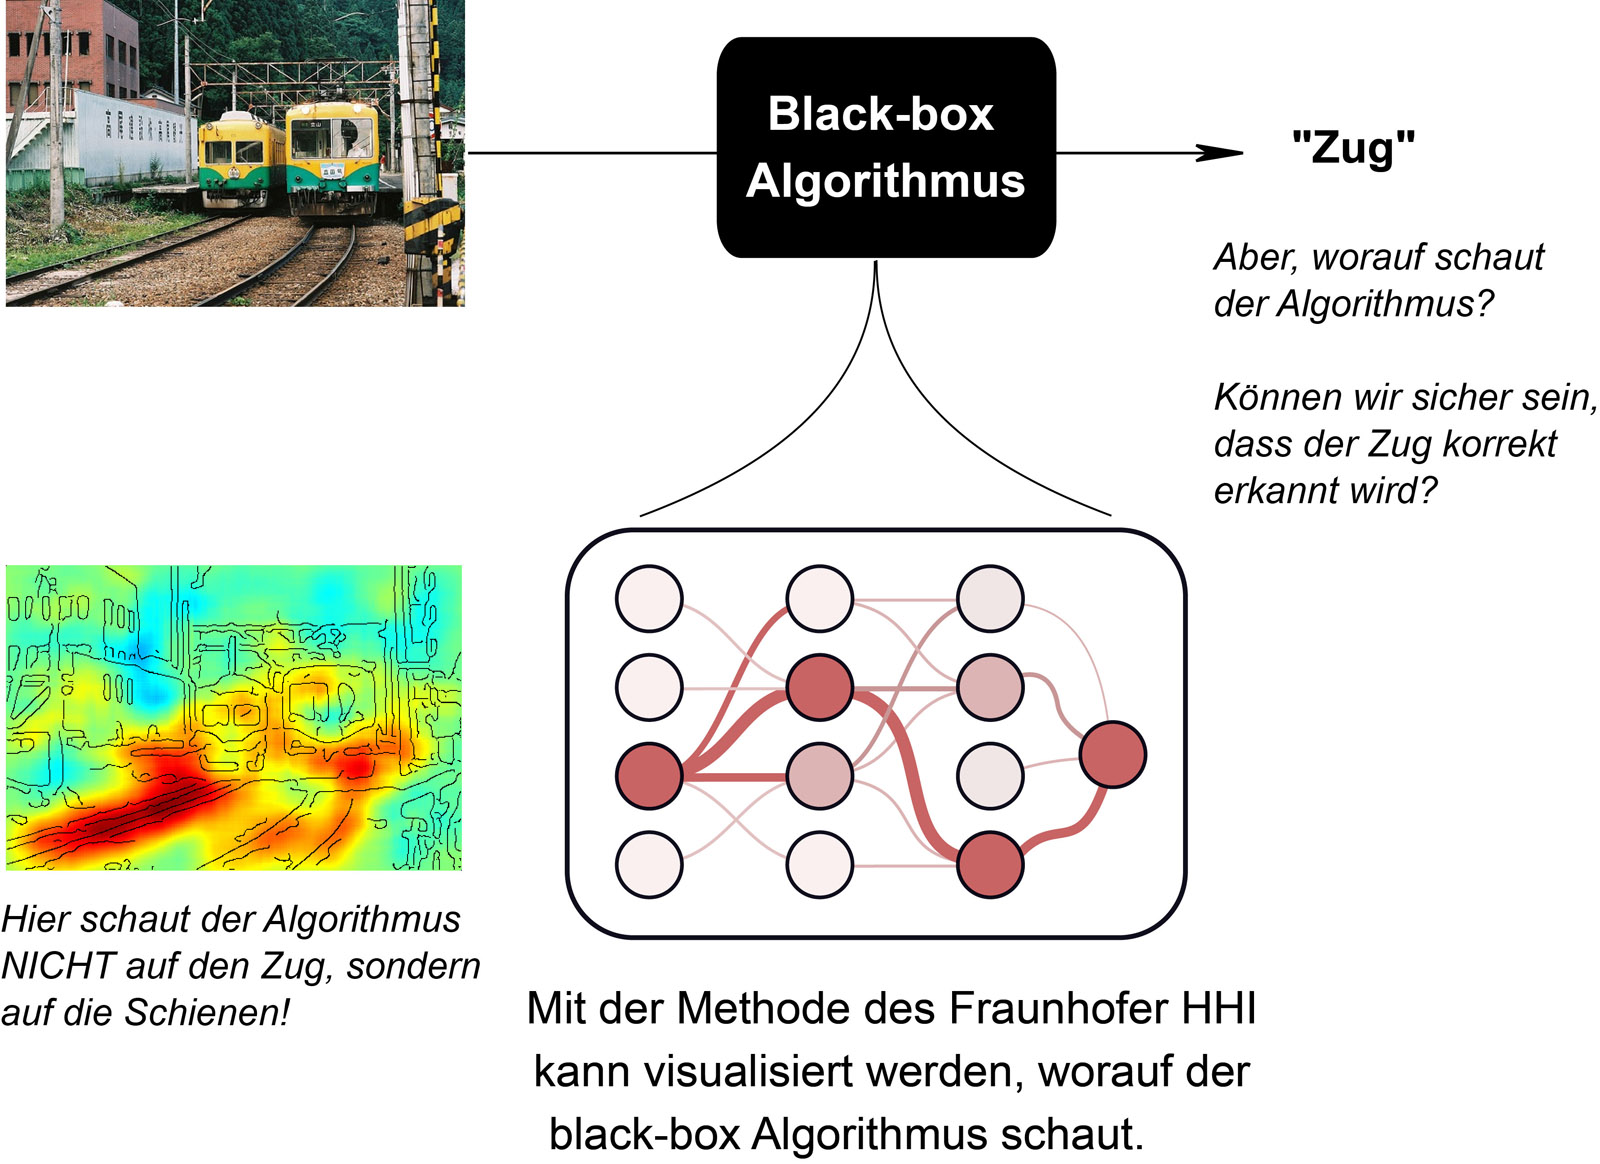 Die Analyse-Software des Fraunhofer HHI visualisiert mit Hilfe von Algorithmen komplexe Lernverfahren (schematische Darstellung).